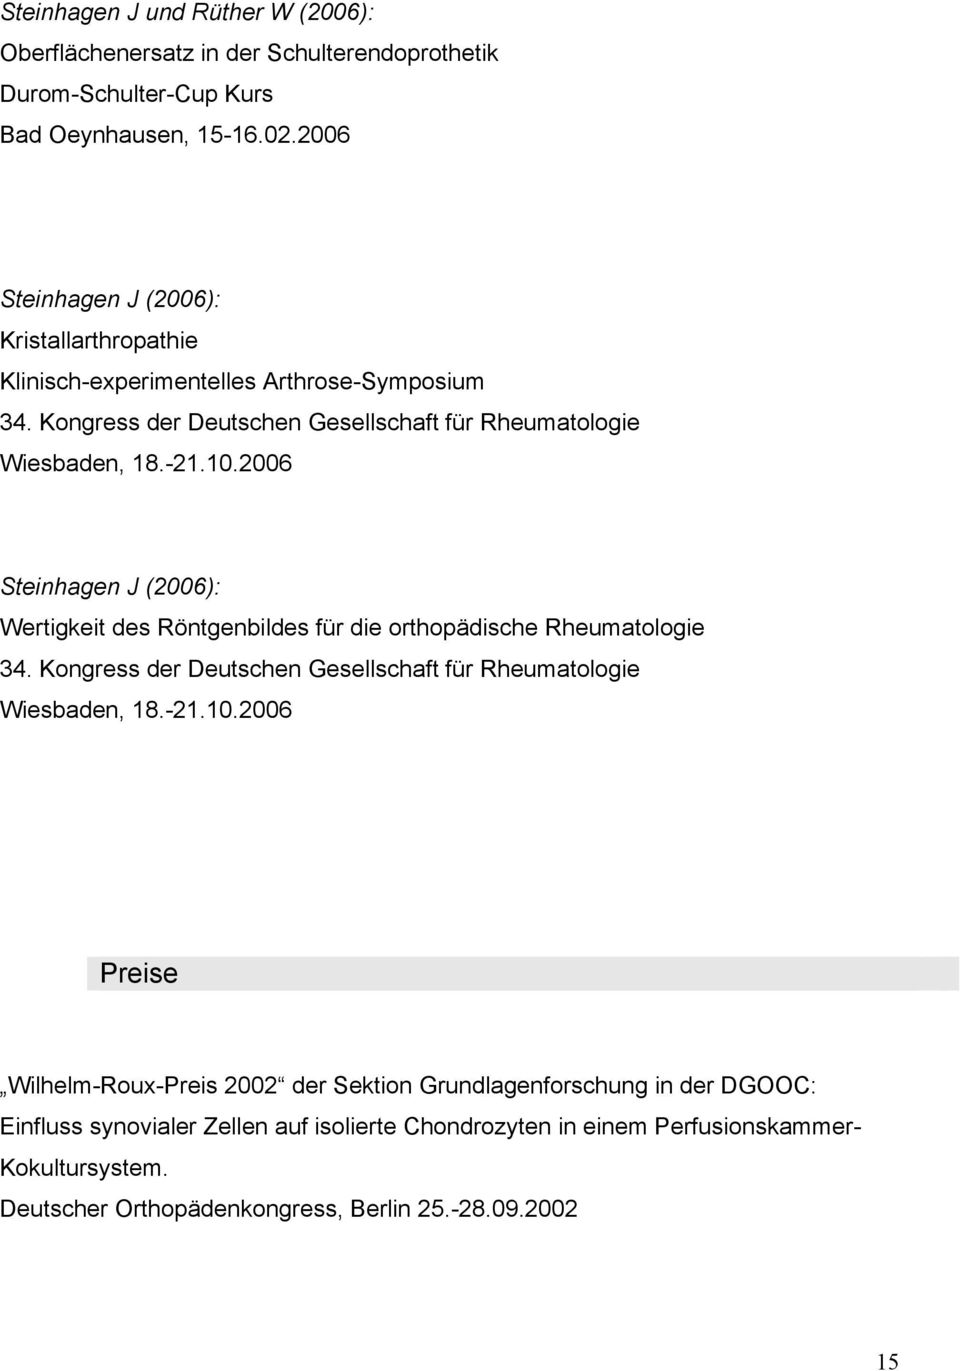 2006 Steinhagen J (2006): Wertigkeit des Röntgenbildes für die orthopädische Rheumatologie 34. Kongress der Deutschen Gesellschaft für Rheumatologie Wiesbaden, 18.-21.10.